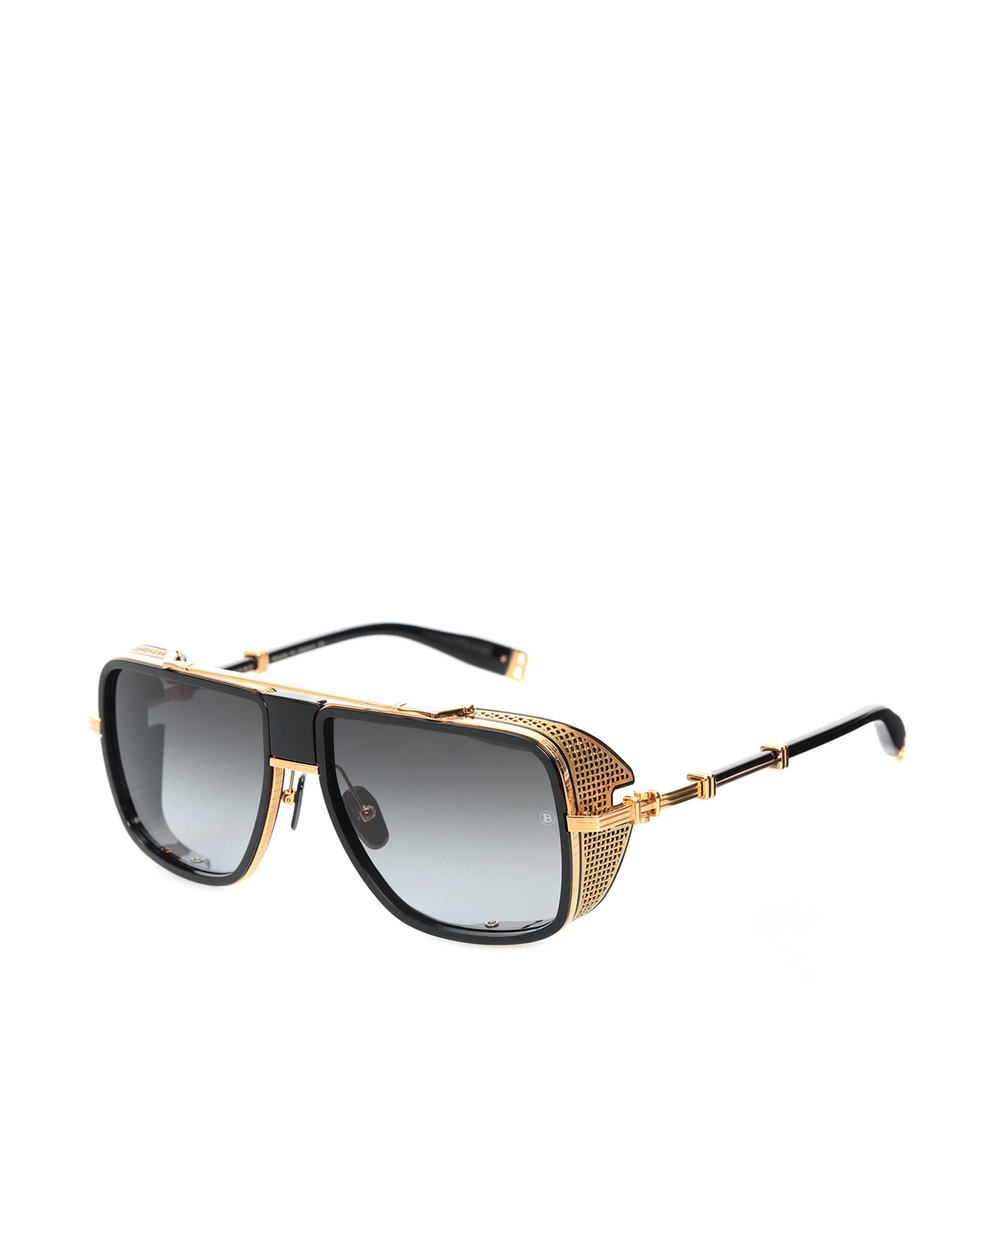 Солнцезащитные очки Balmain BPS-104C-59, черный цвет • Купить в интернет-магазине Kameron